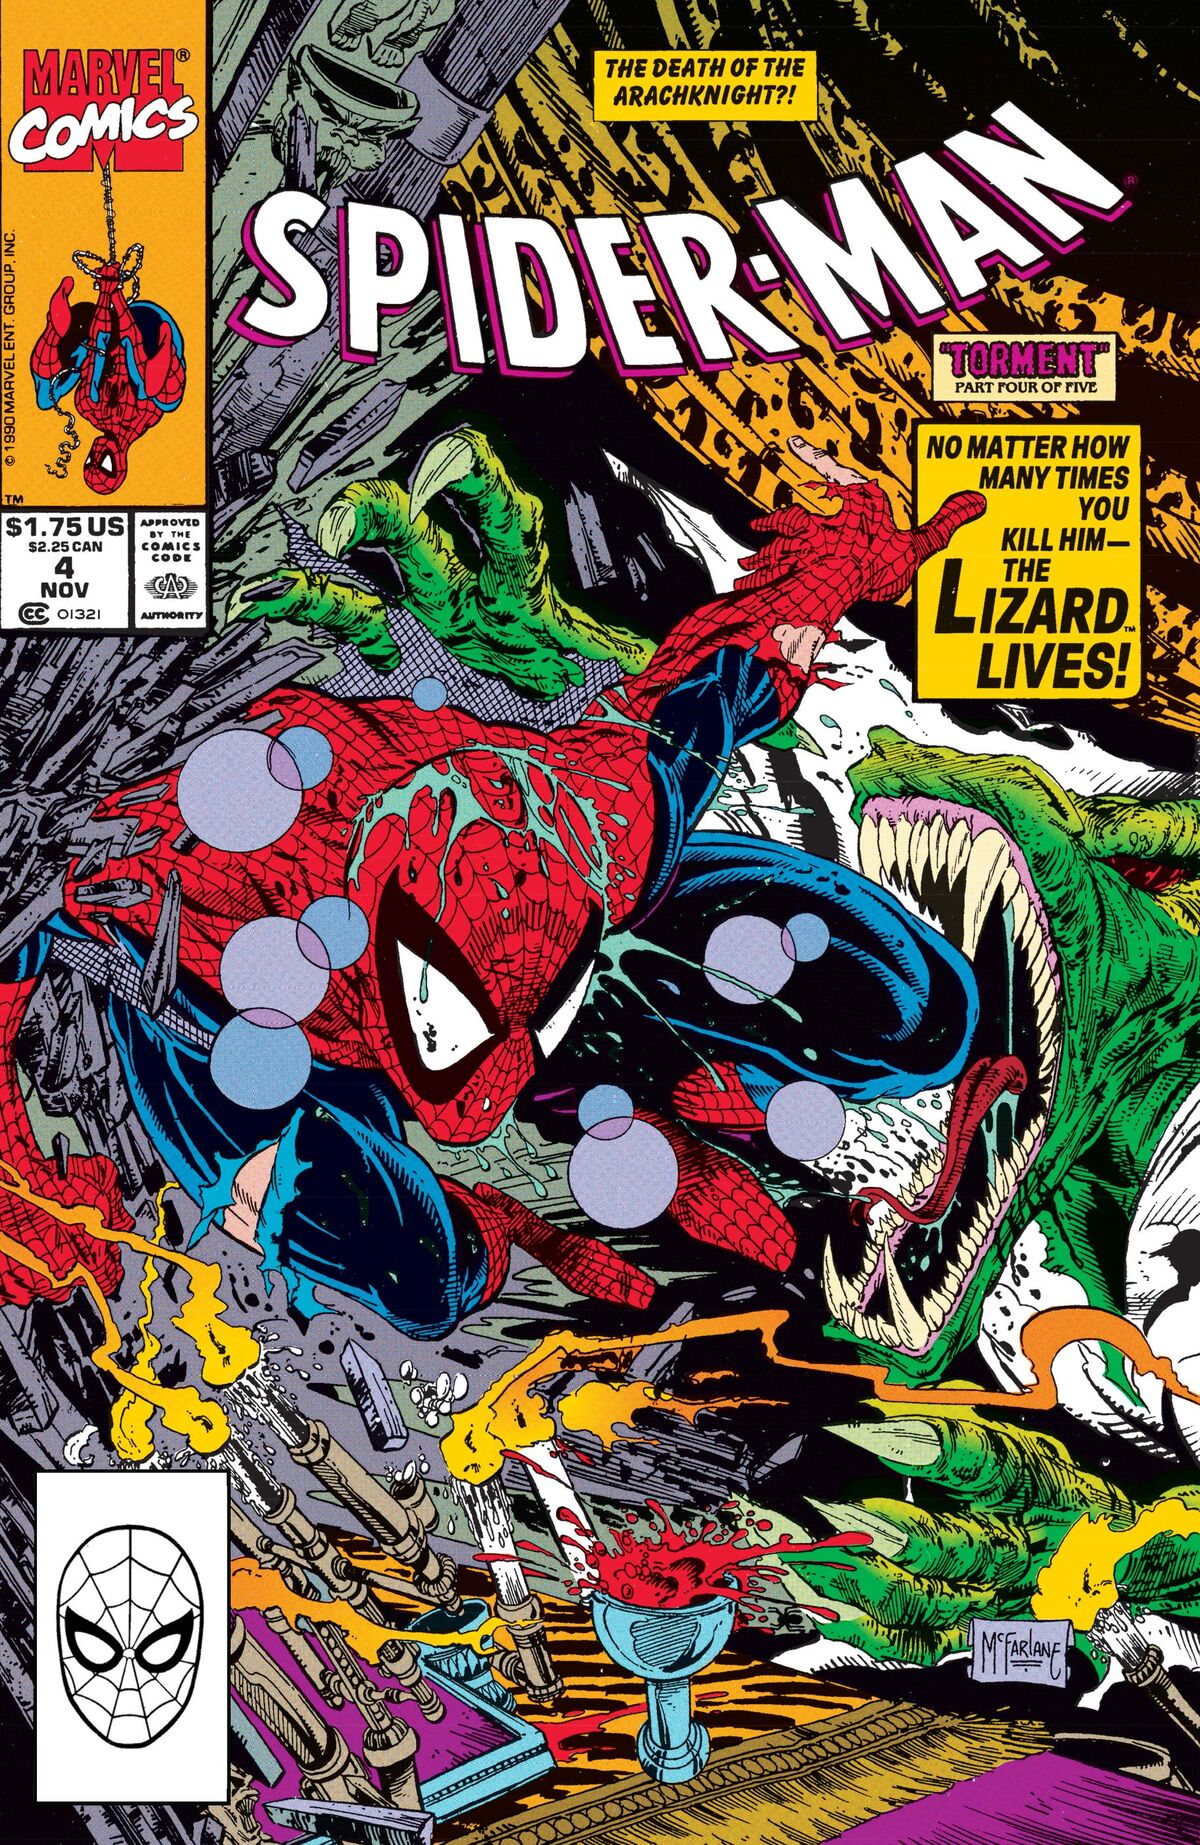 Spider-Man Vol 1 4 | Marvel Database | Fandom